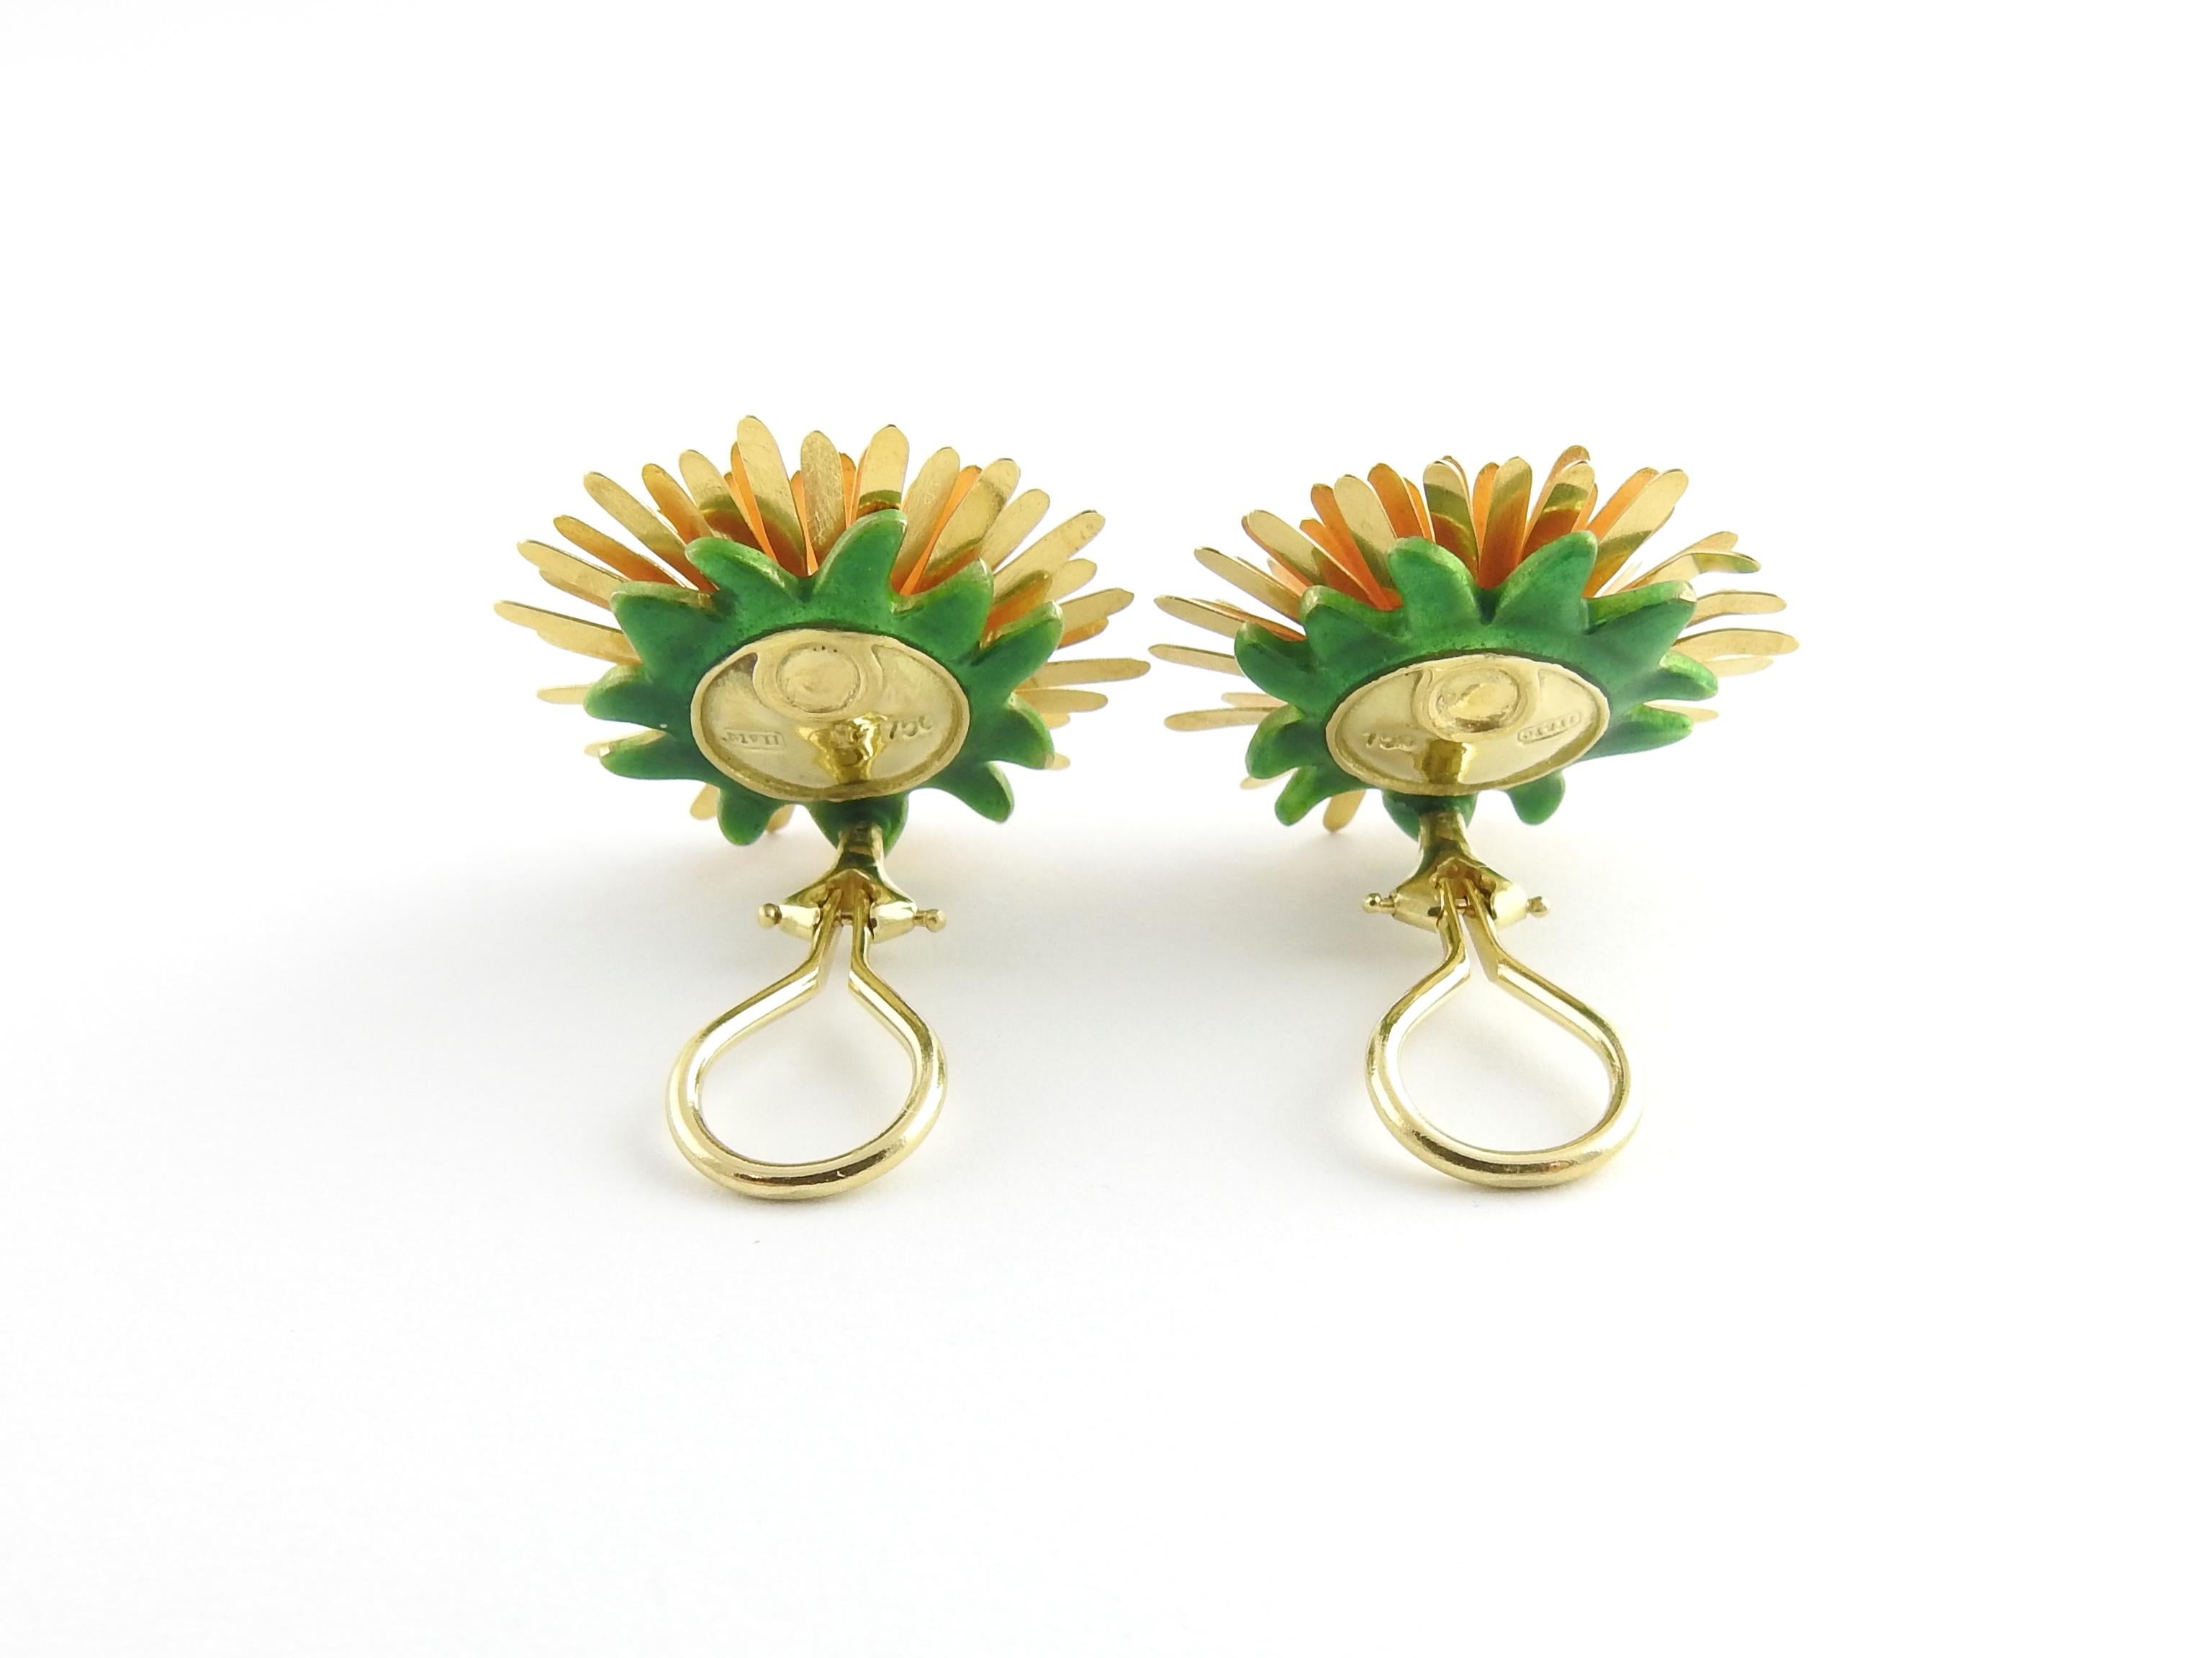 McTeigue & McClelland 18 Karat Gold Dandelion Earrings with Green Enamel Back 1